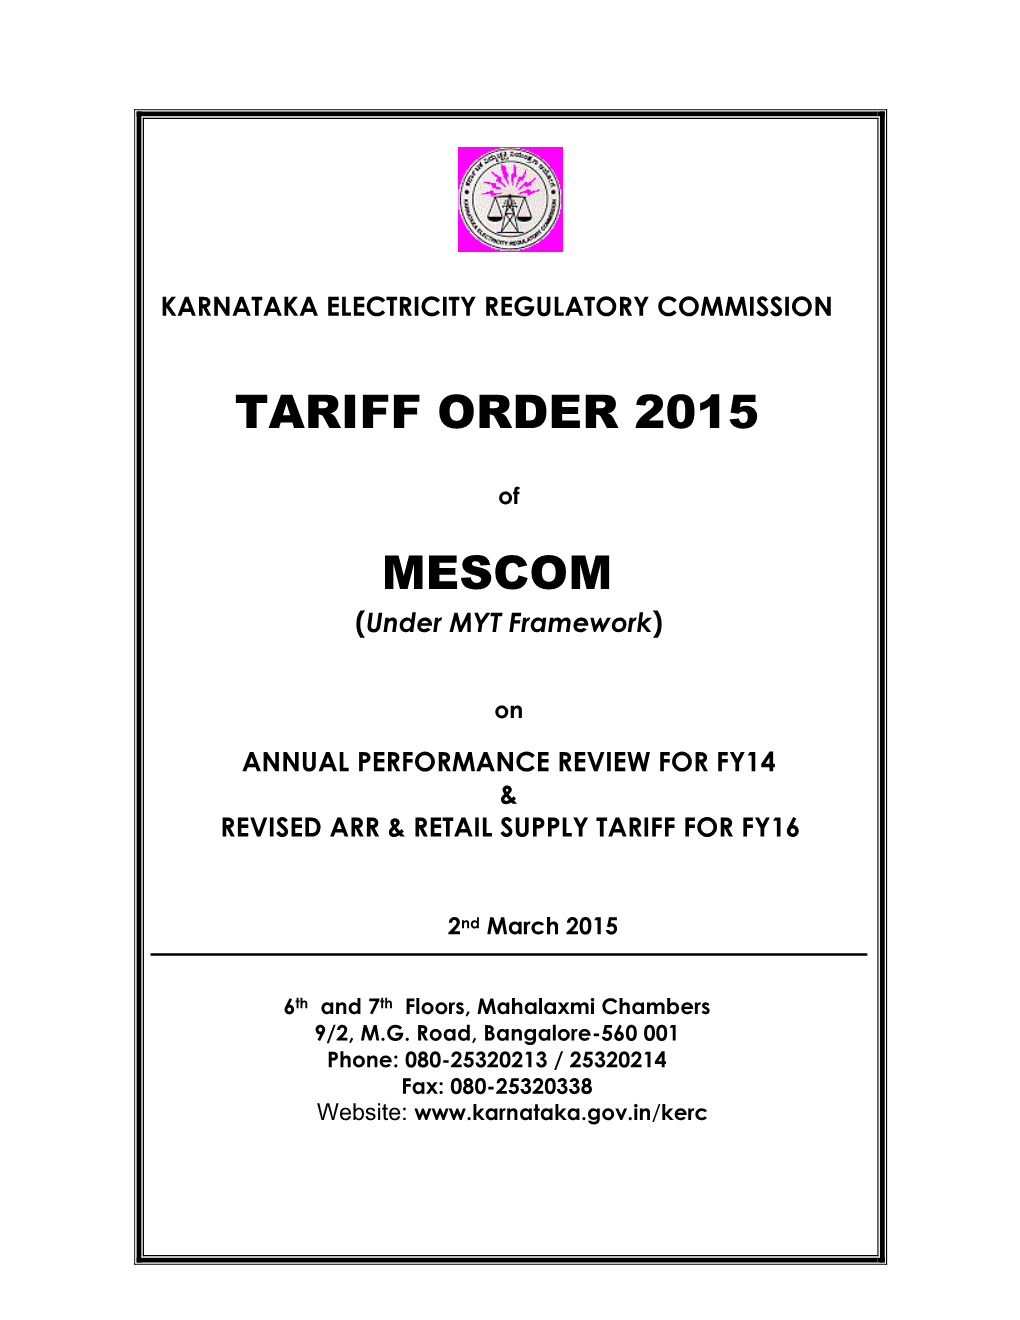 Tariff Order 2015 Mescom